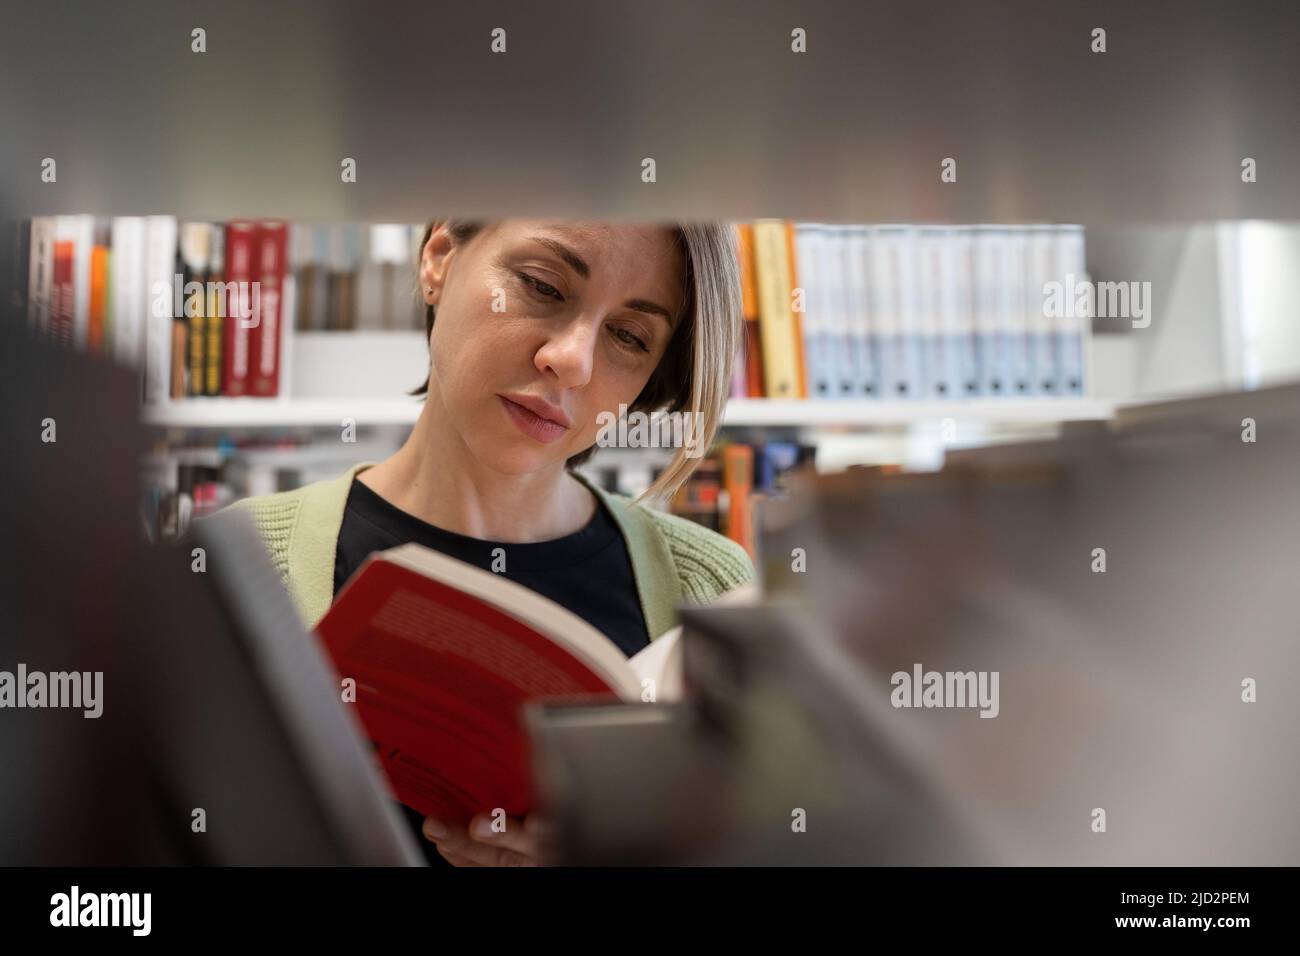 Donna scandinava di mezza età che sceglie il libro di testo, cercando la letteratura mentre si prepara per l'esame Foto Stock